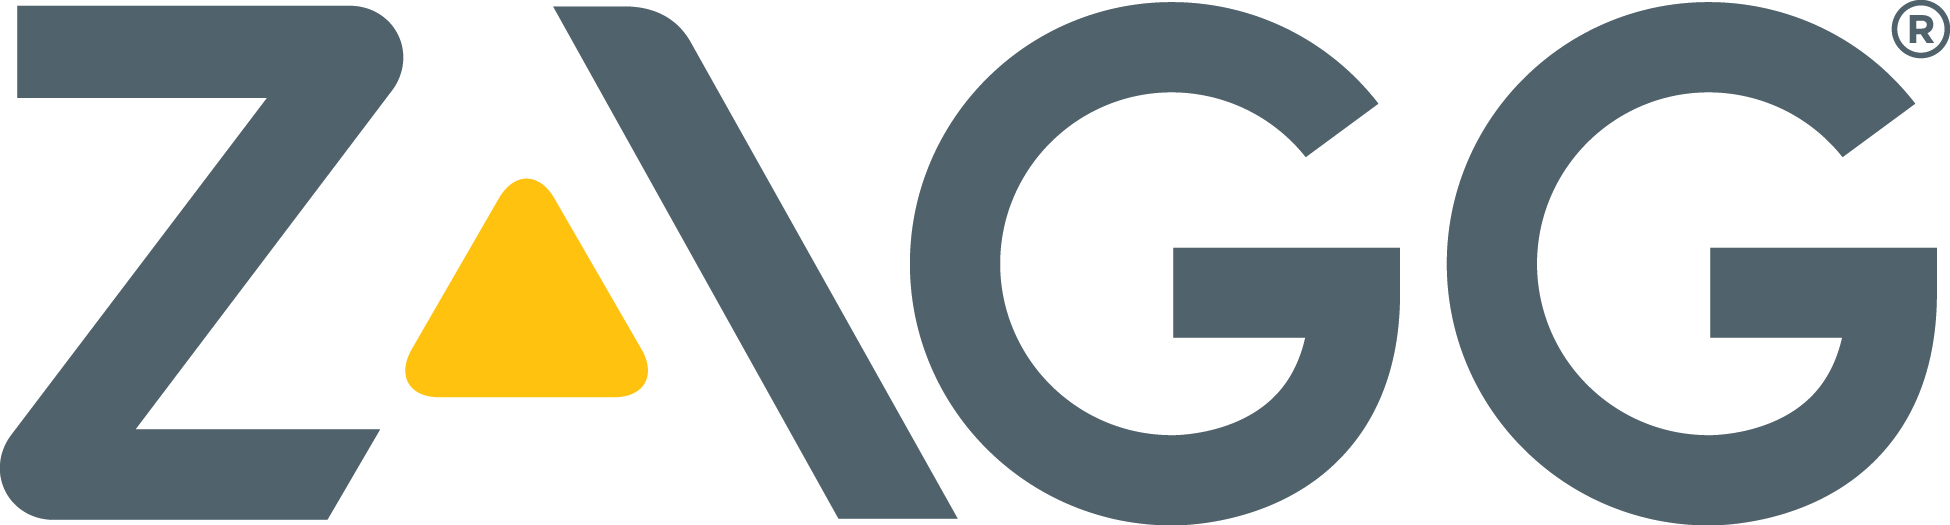 ZAGG_Logo_FULL.jpg